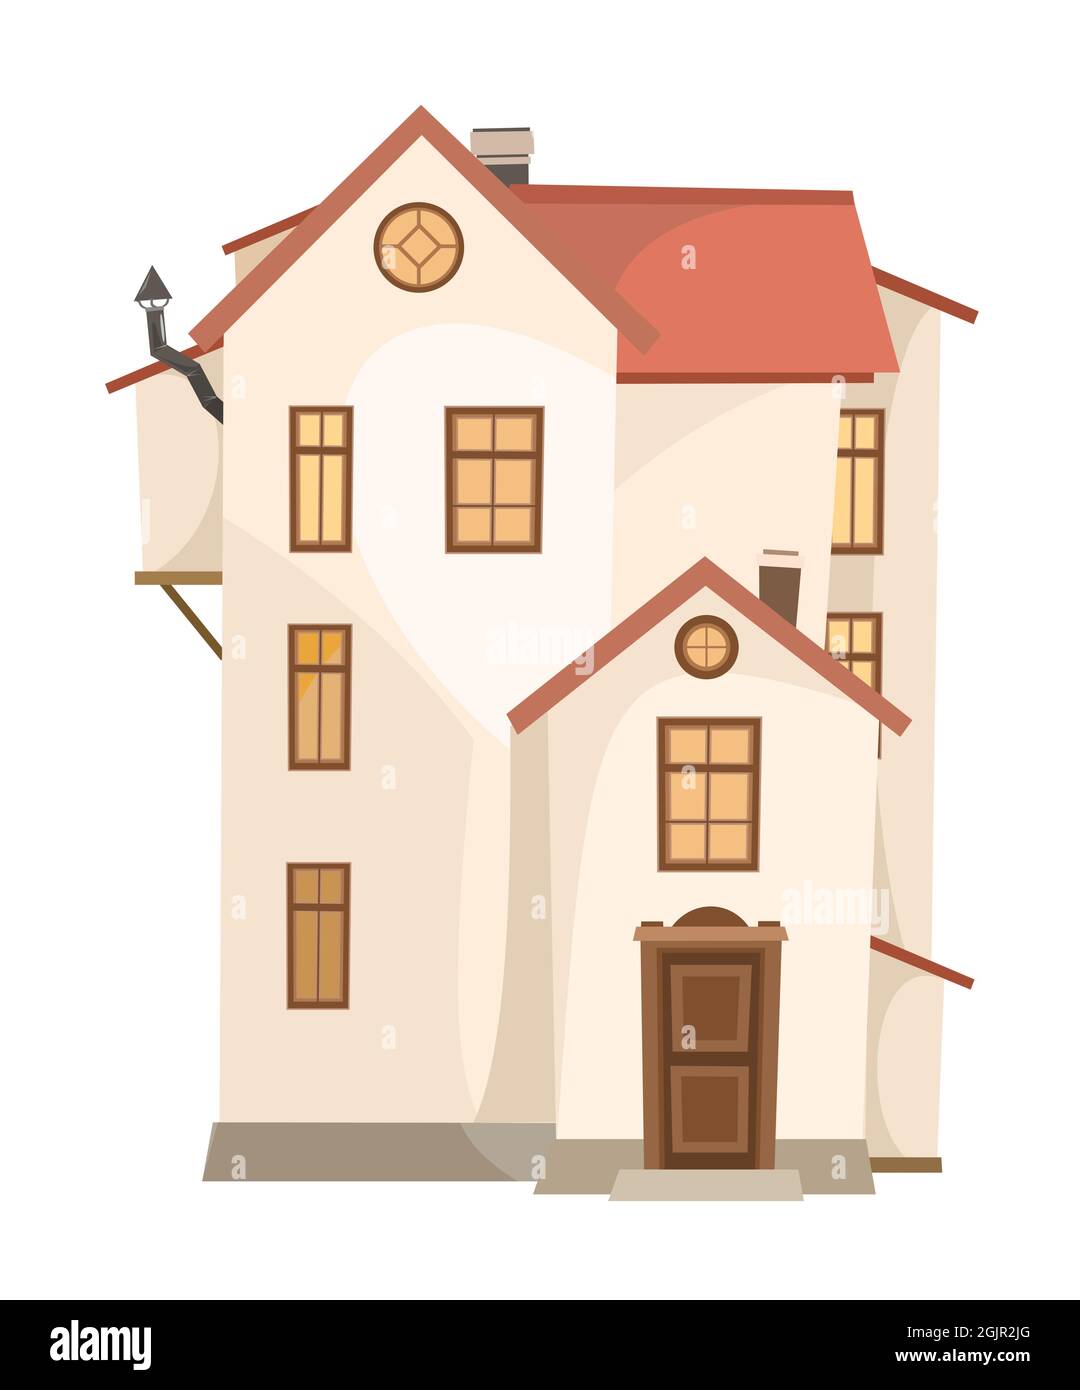 Hohes Cartoon-Haus mit Kamin. Gemütliche, einfache ländliche Wohnung in einem traditionellen europäischen Stil. Dreistöckig. Süßes Zuhause. Isoliert auf weißem Hintergrund Stock Vektor